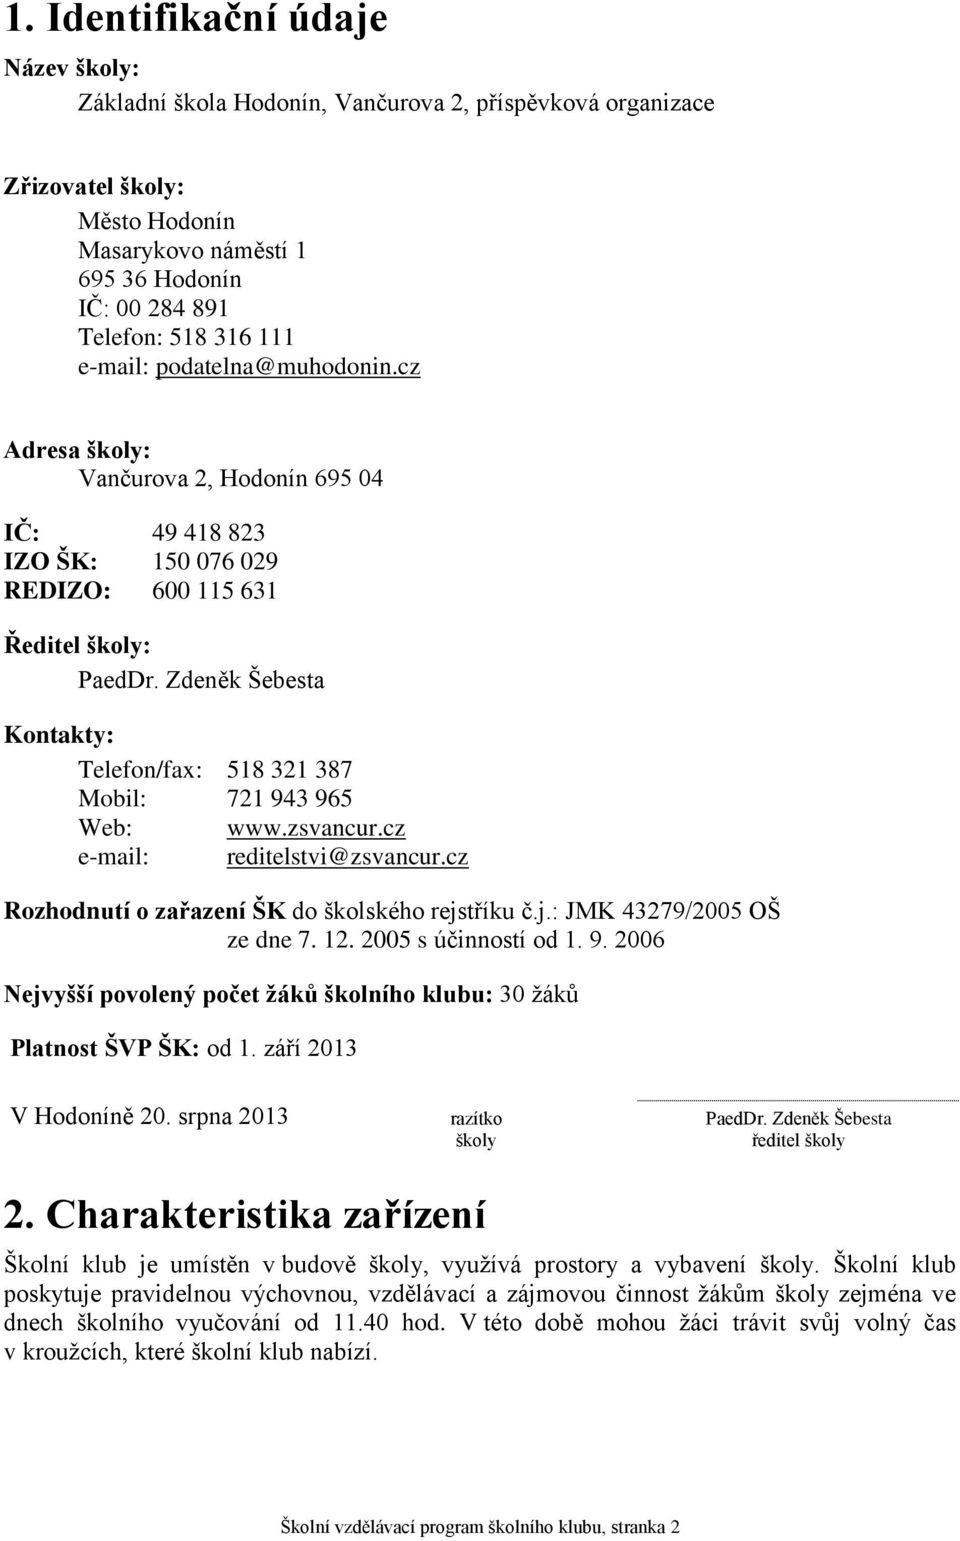 Zdeněk Šebesta Kontakty: Telefon/fax: 518 321 387 Mobil: 721 943 965 Web: www.zsvancur.cz e-mail: reditelstvi@zsvancur.cz Rozhodnutí o zařazení ŠK do školského rejstříku č.j.: JMK 43279/2005 OŠ ze dne 7.